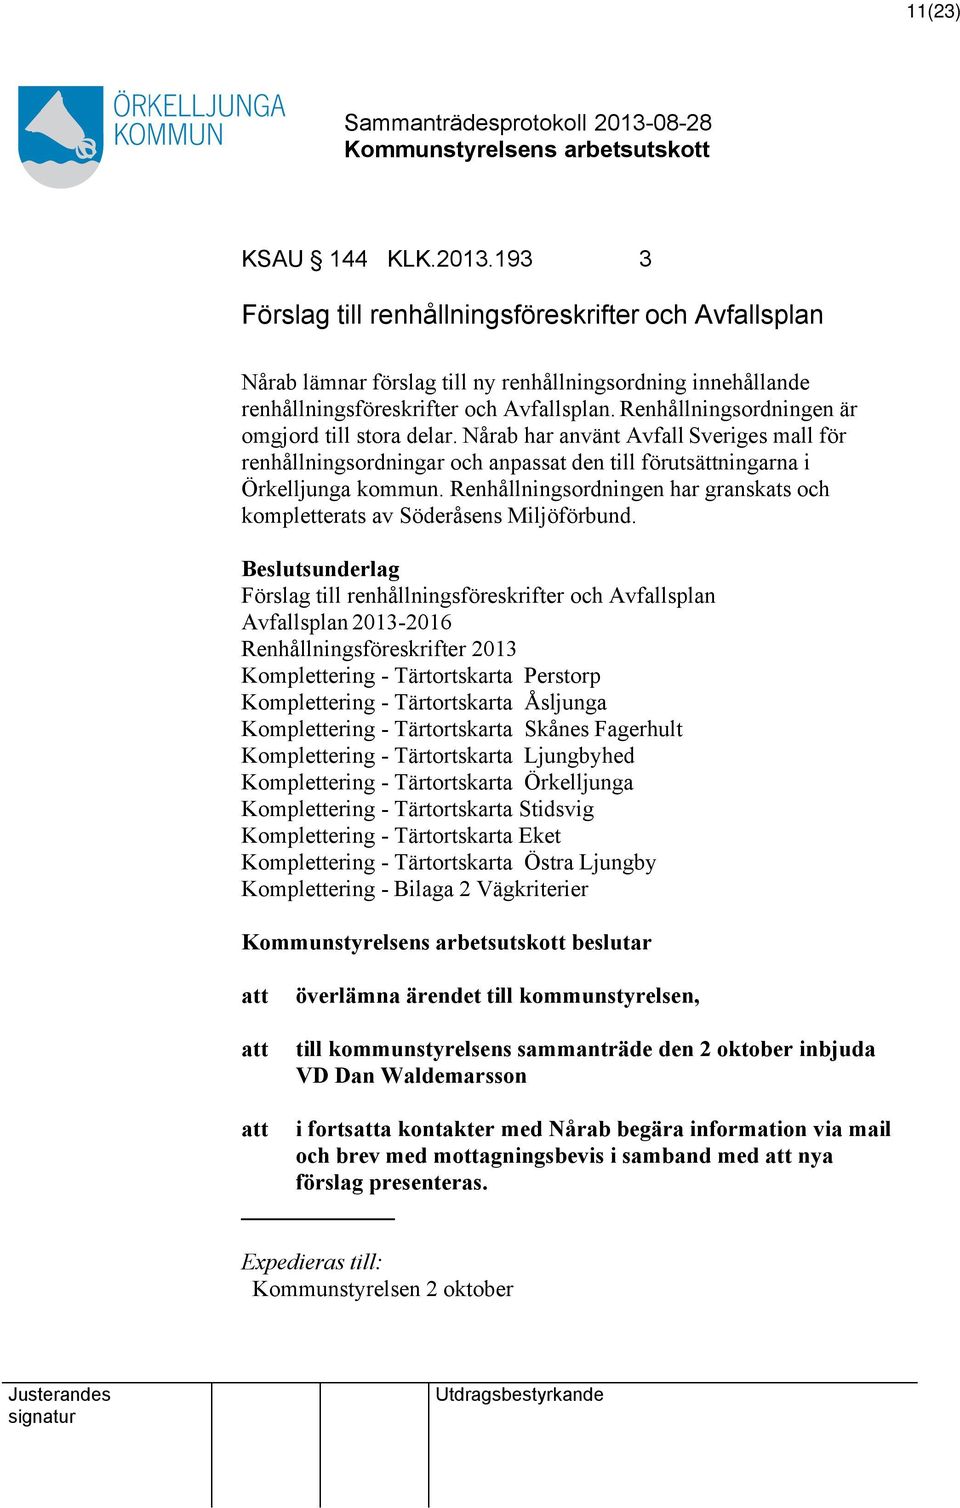 Renhållningsordningen har granskats och kompletterats av Söderåsens Miljöförbund.